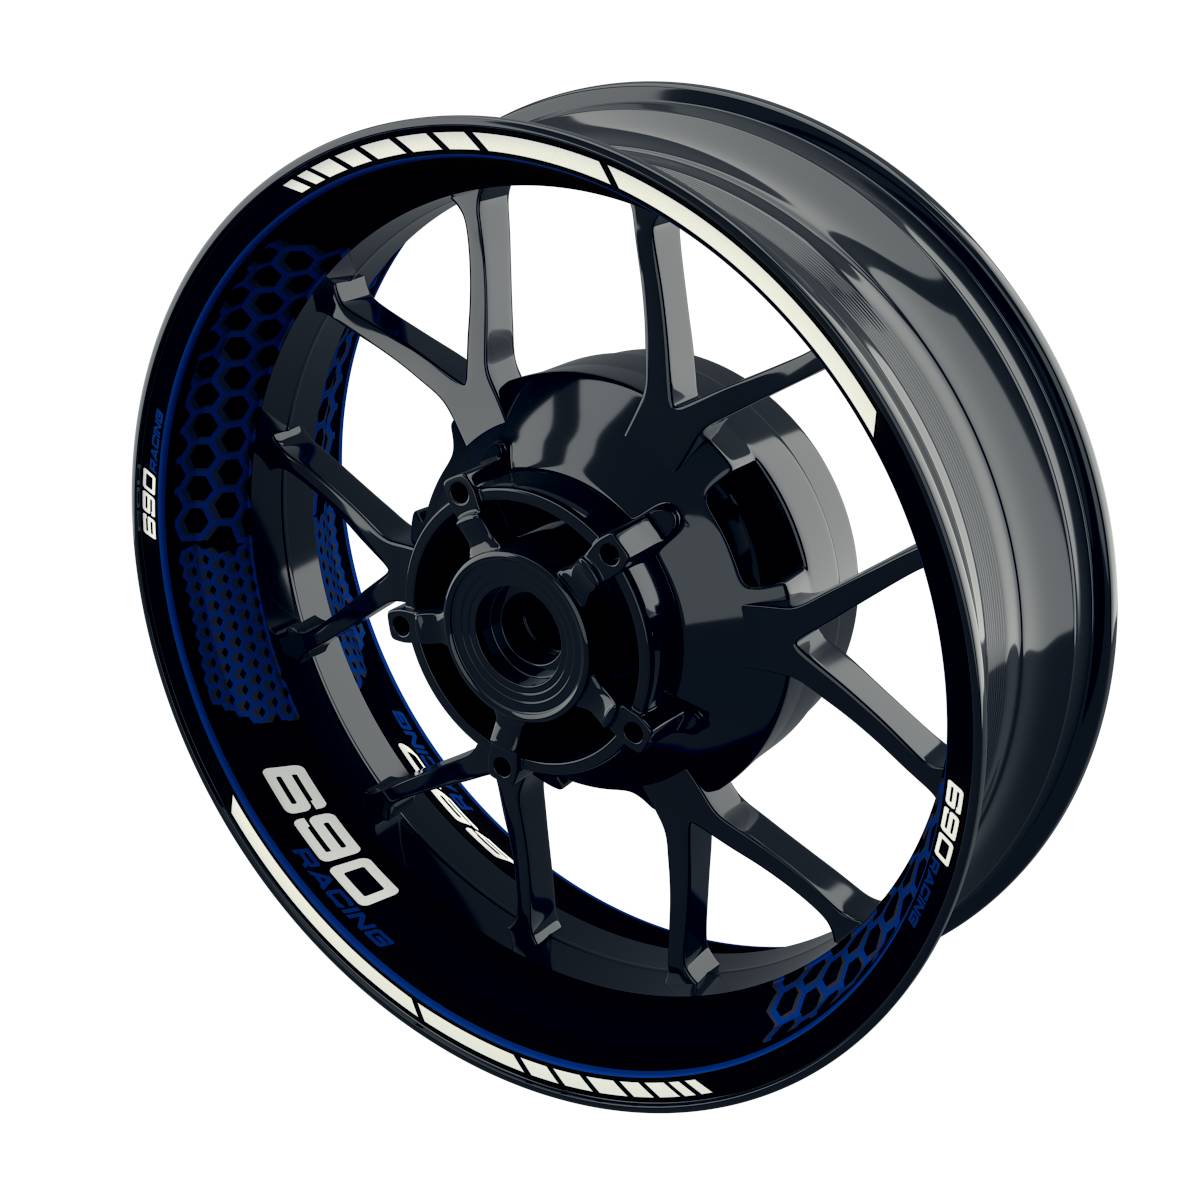 690 Racing Rim Decals Hexagon Wheelsticker Premium